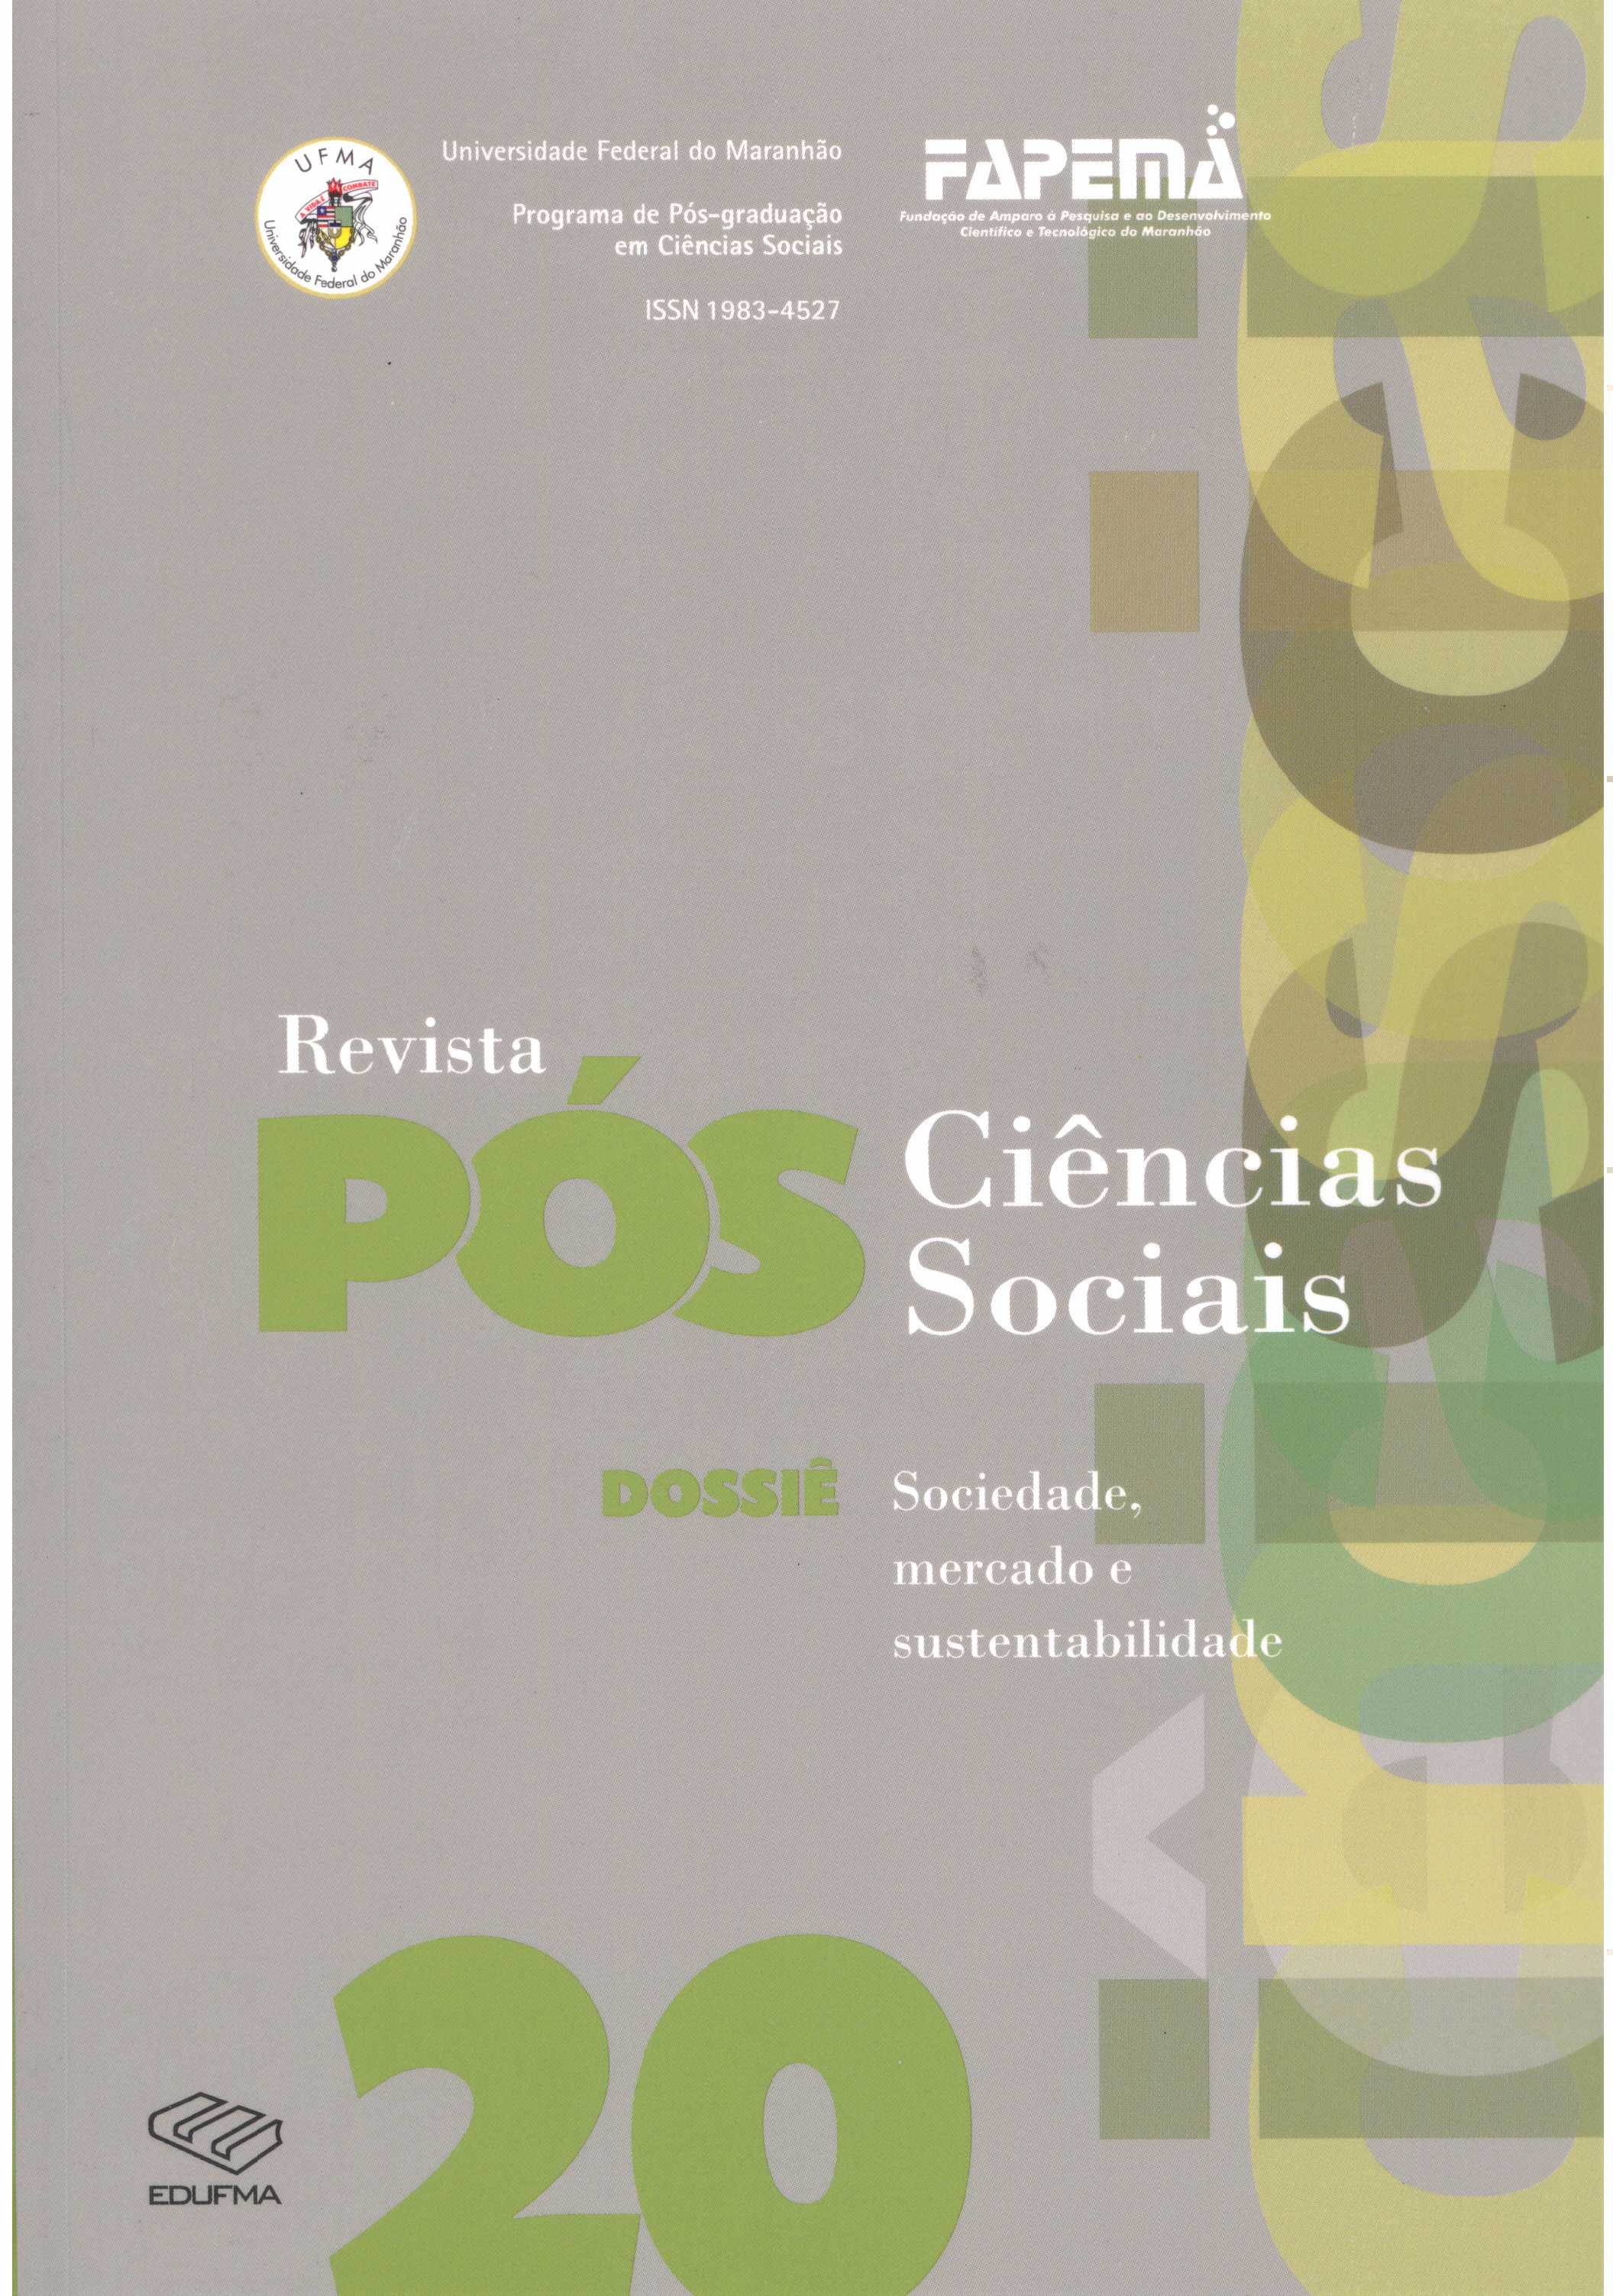 					Ver Vol. 10 Núm. 20 (2013): DOSSIÊ: Sociedade, Mercado e Sustentabilidade
				